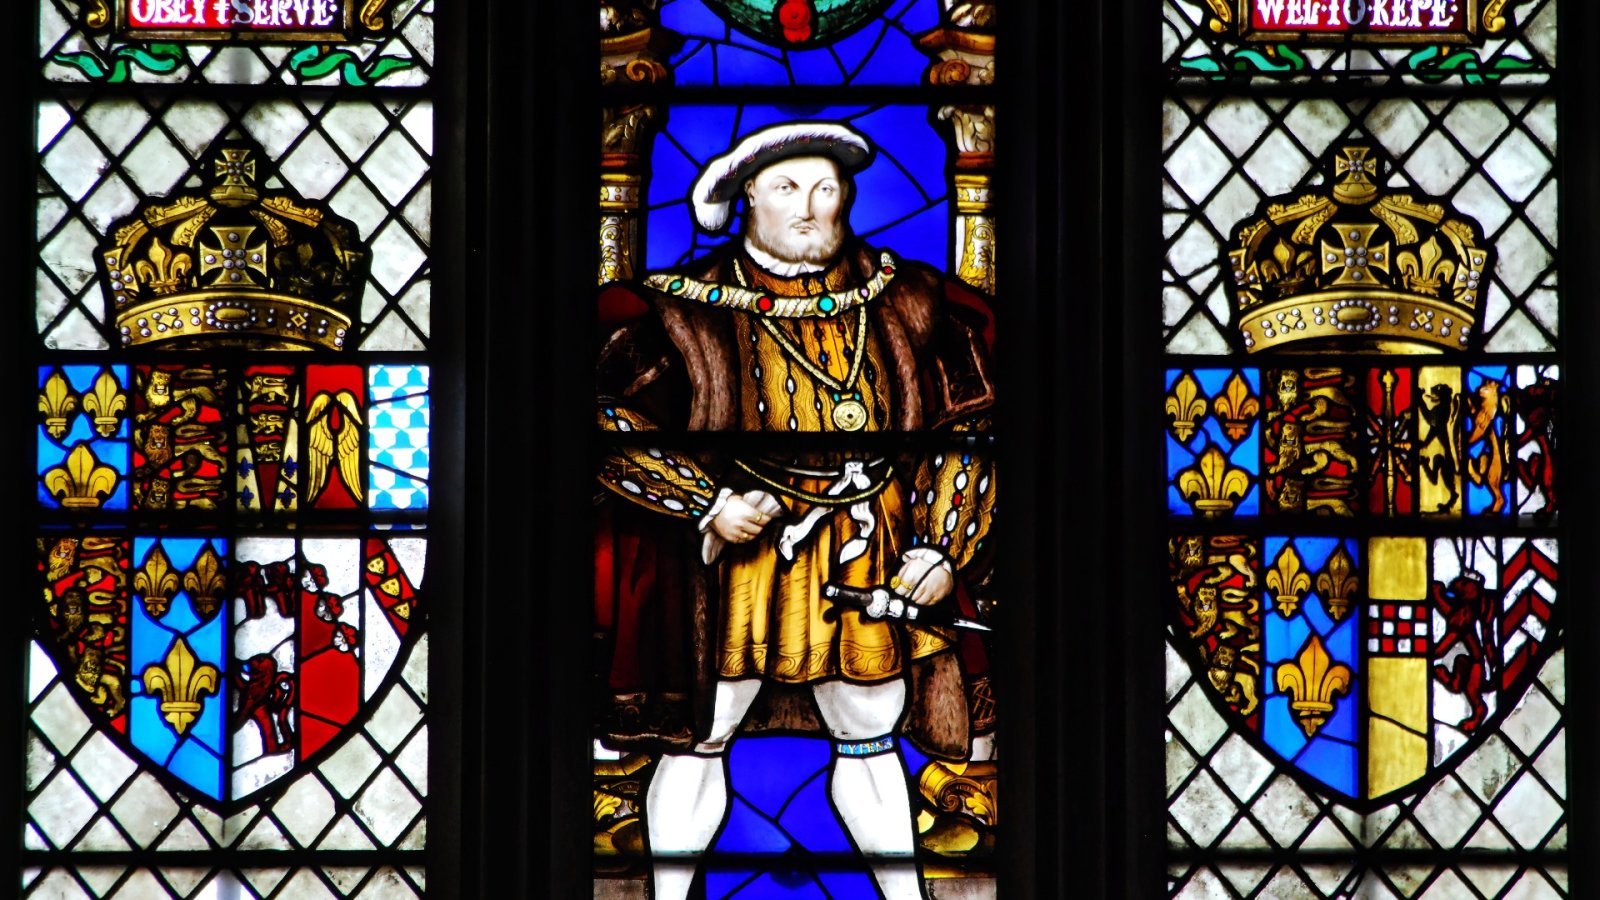 ヘンリー8世に関連するルネッサンスのペンダントがイギリスで発見